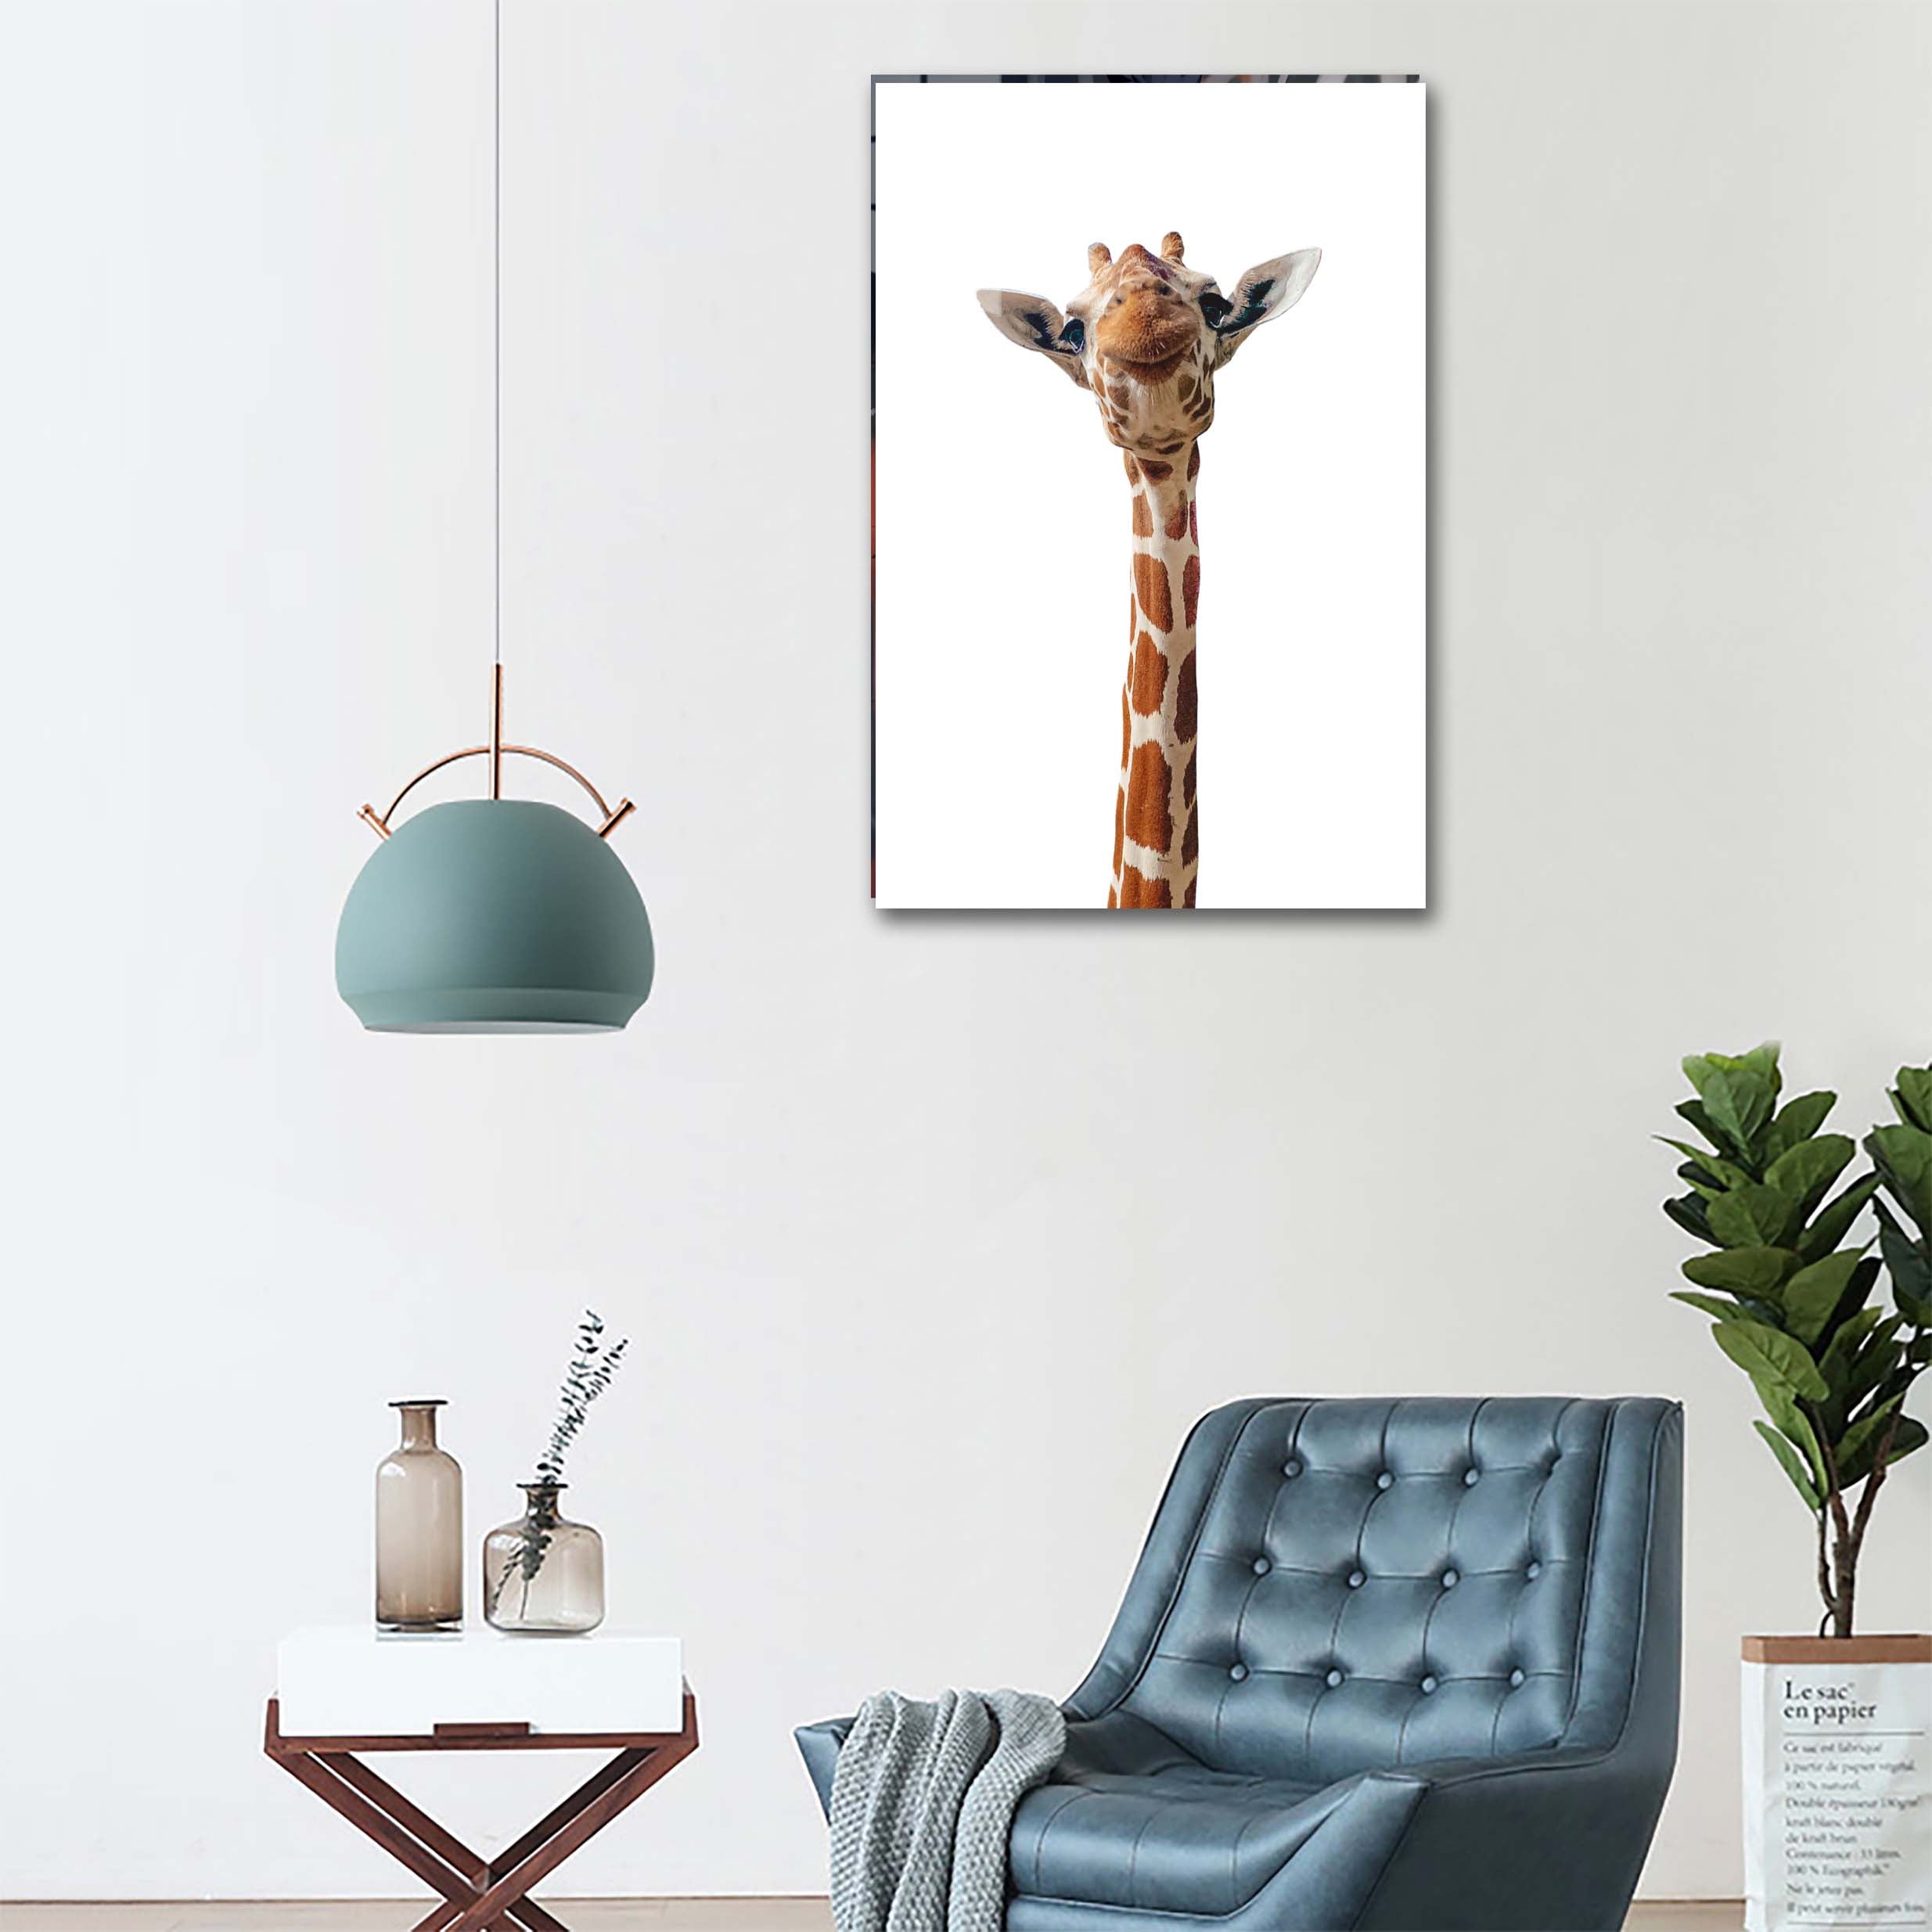 A Cute Giraffe-Artwork by @VICKY